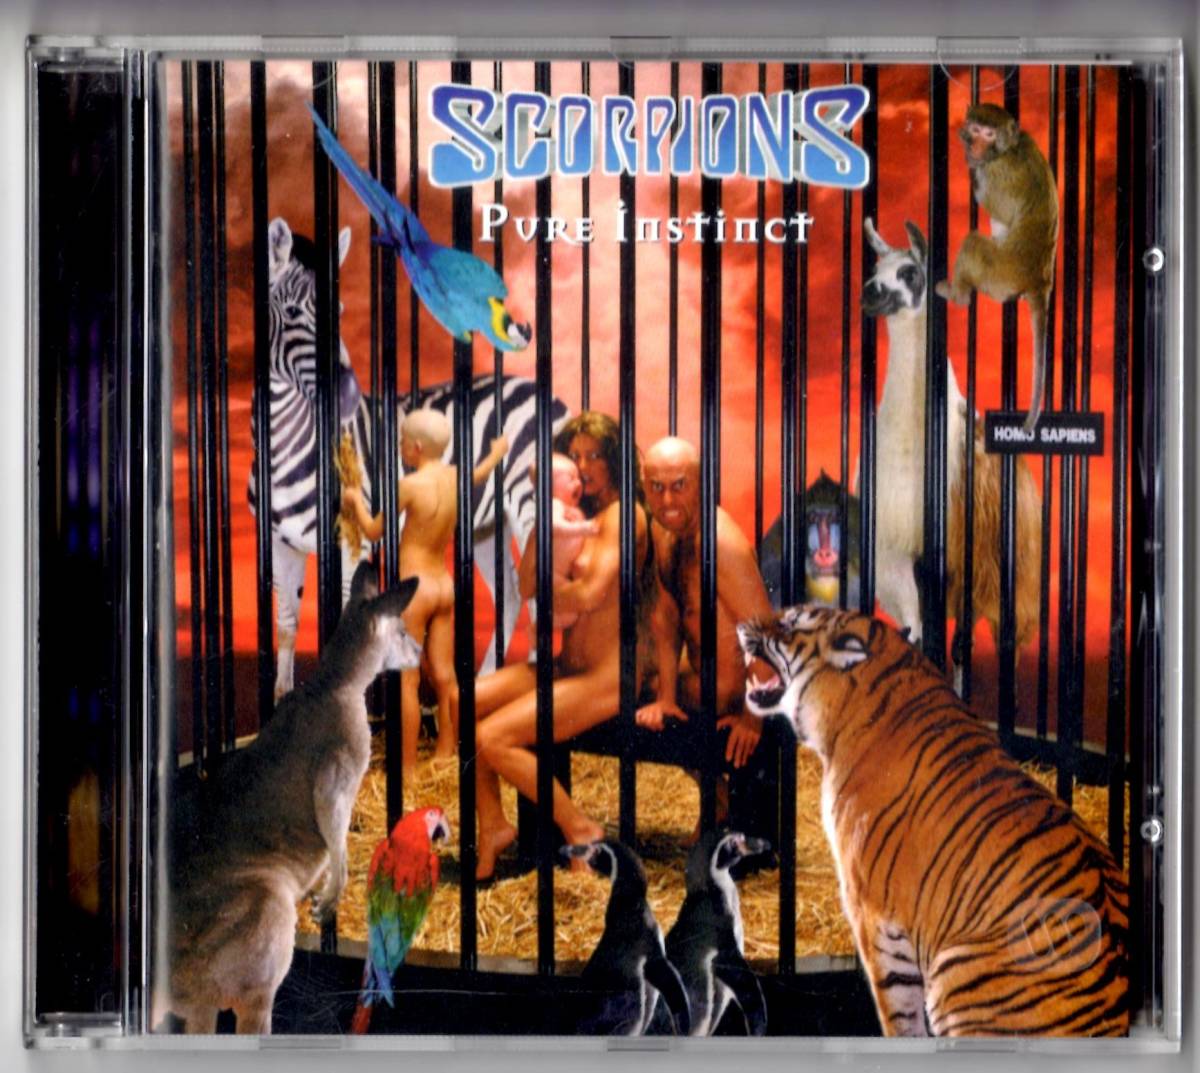 Used CD 輸入盤 スコーピオンズ Scorpions『ピュア・インスティンクト〜蠍の本能』- Pure Instinct(1996年発表)全11曲EU盤_画像1